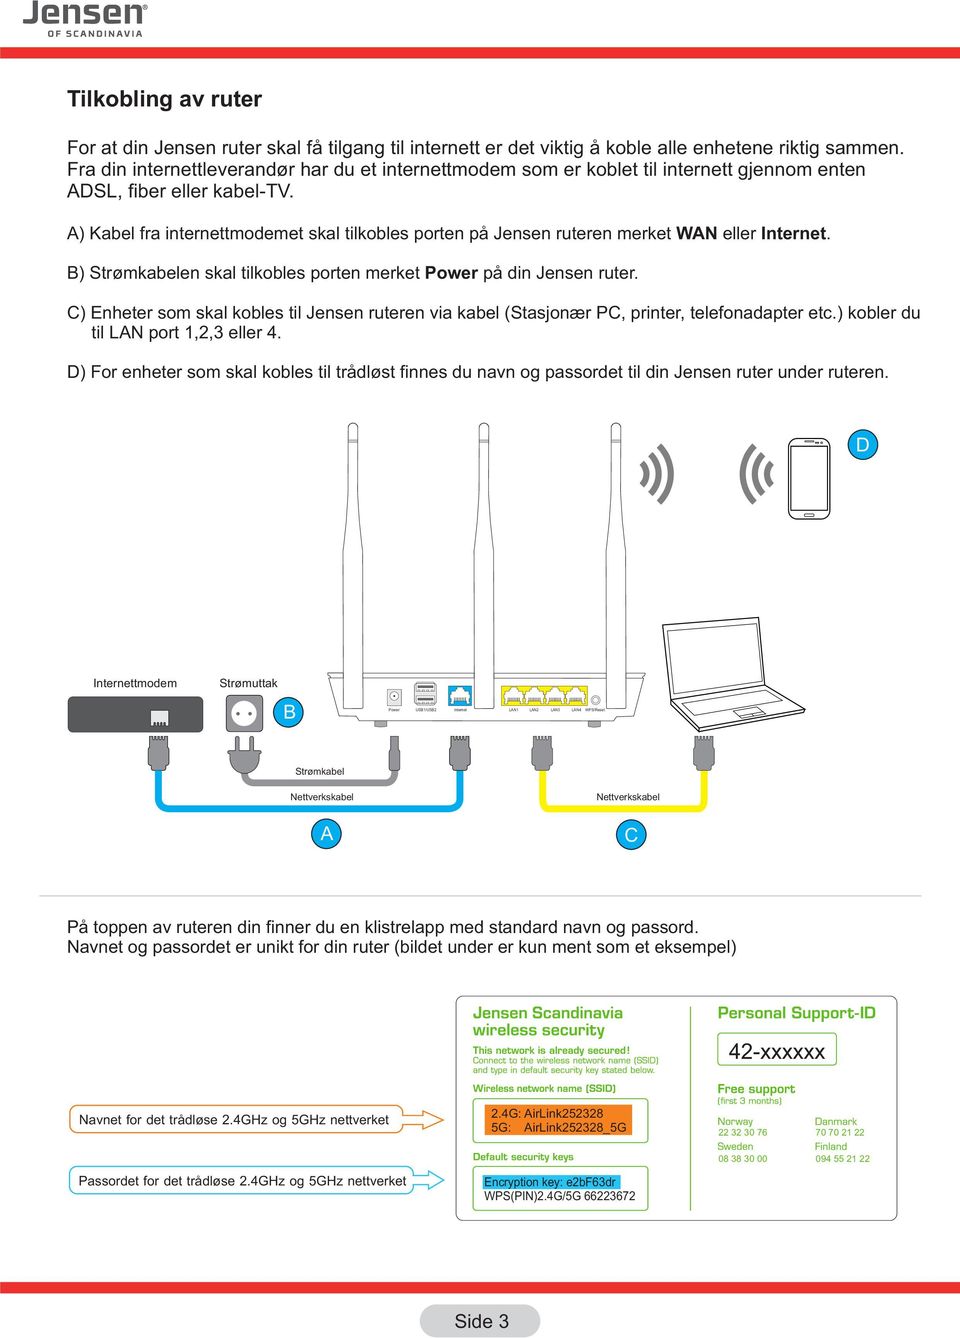 A) Kabel fra internettmodemet skal tilkobles porten på Jensen ruteren merket WAN eller Internet. B) Strømkabelen skal tilkobles porten merket Power på din Jensen ruter.